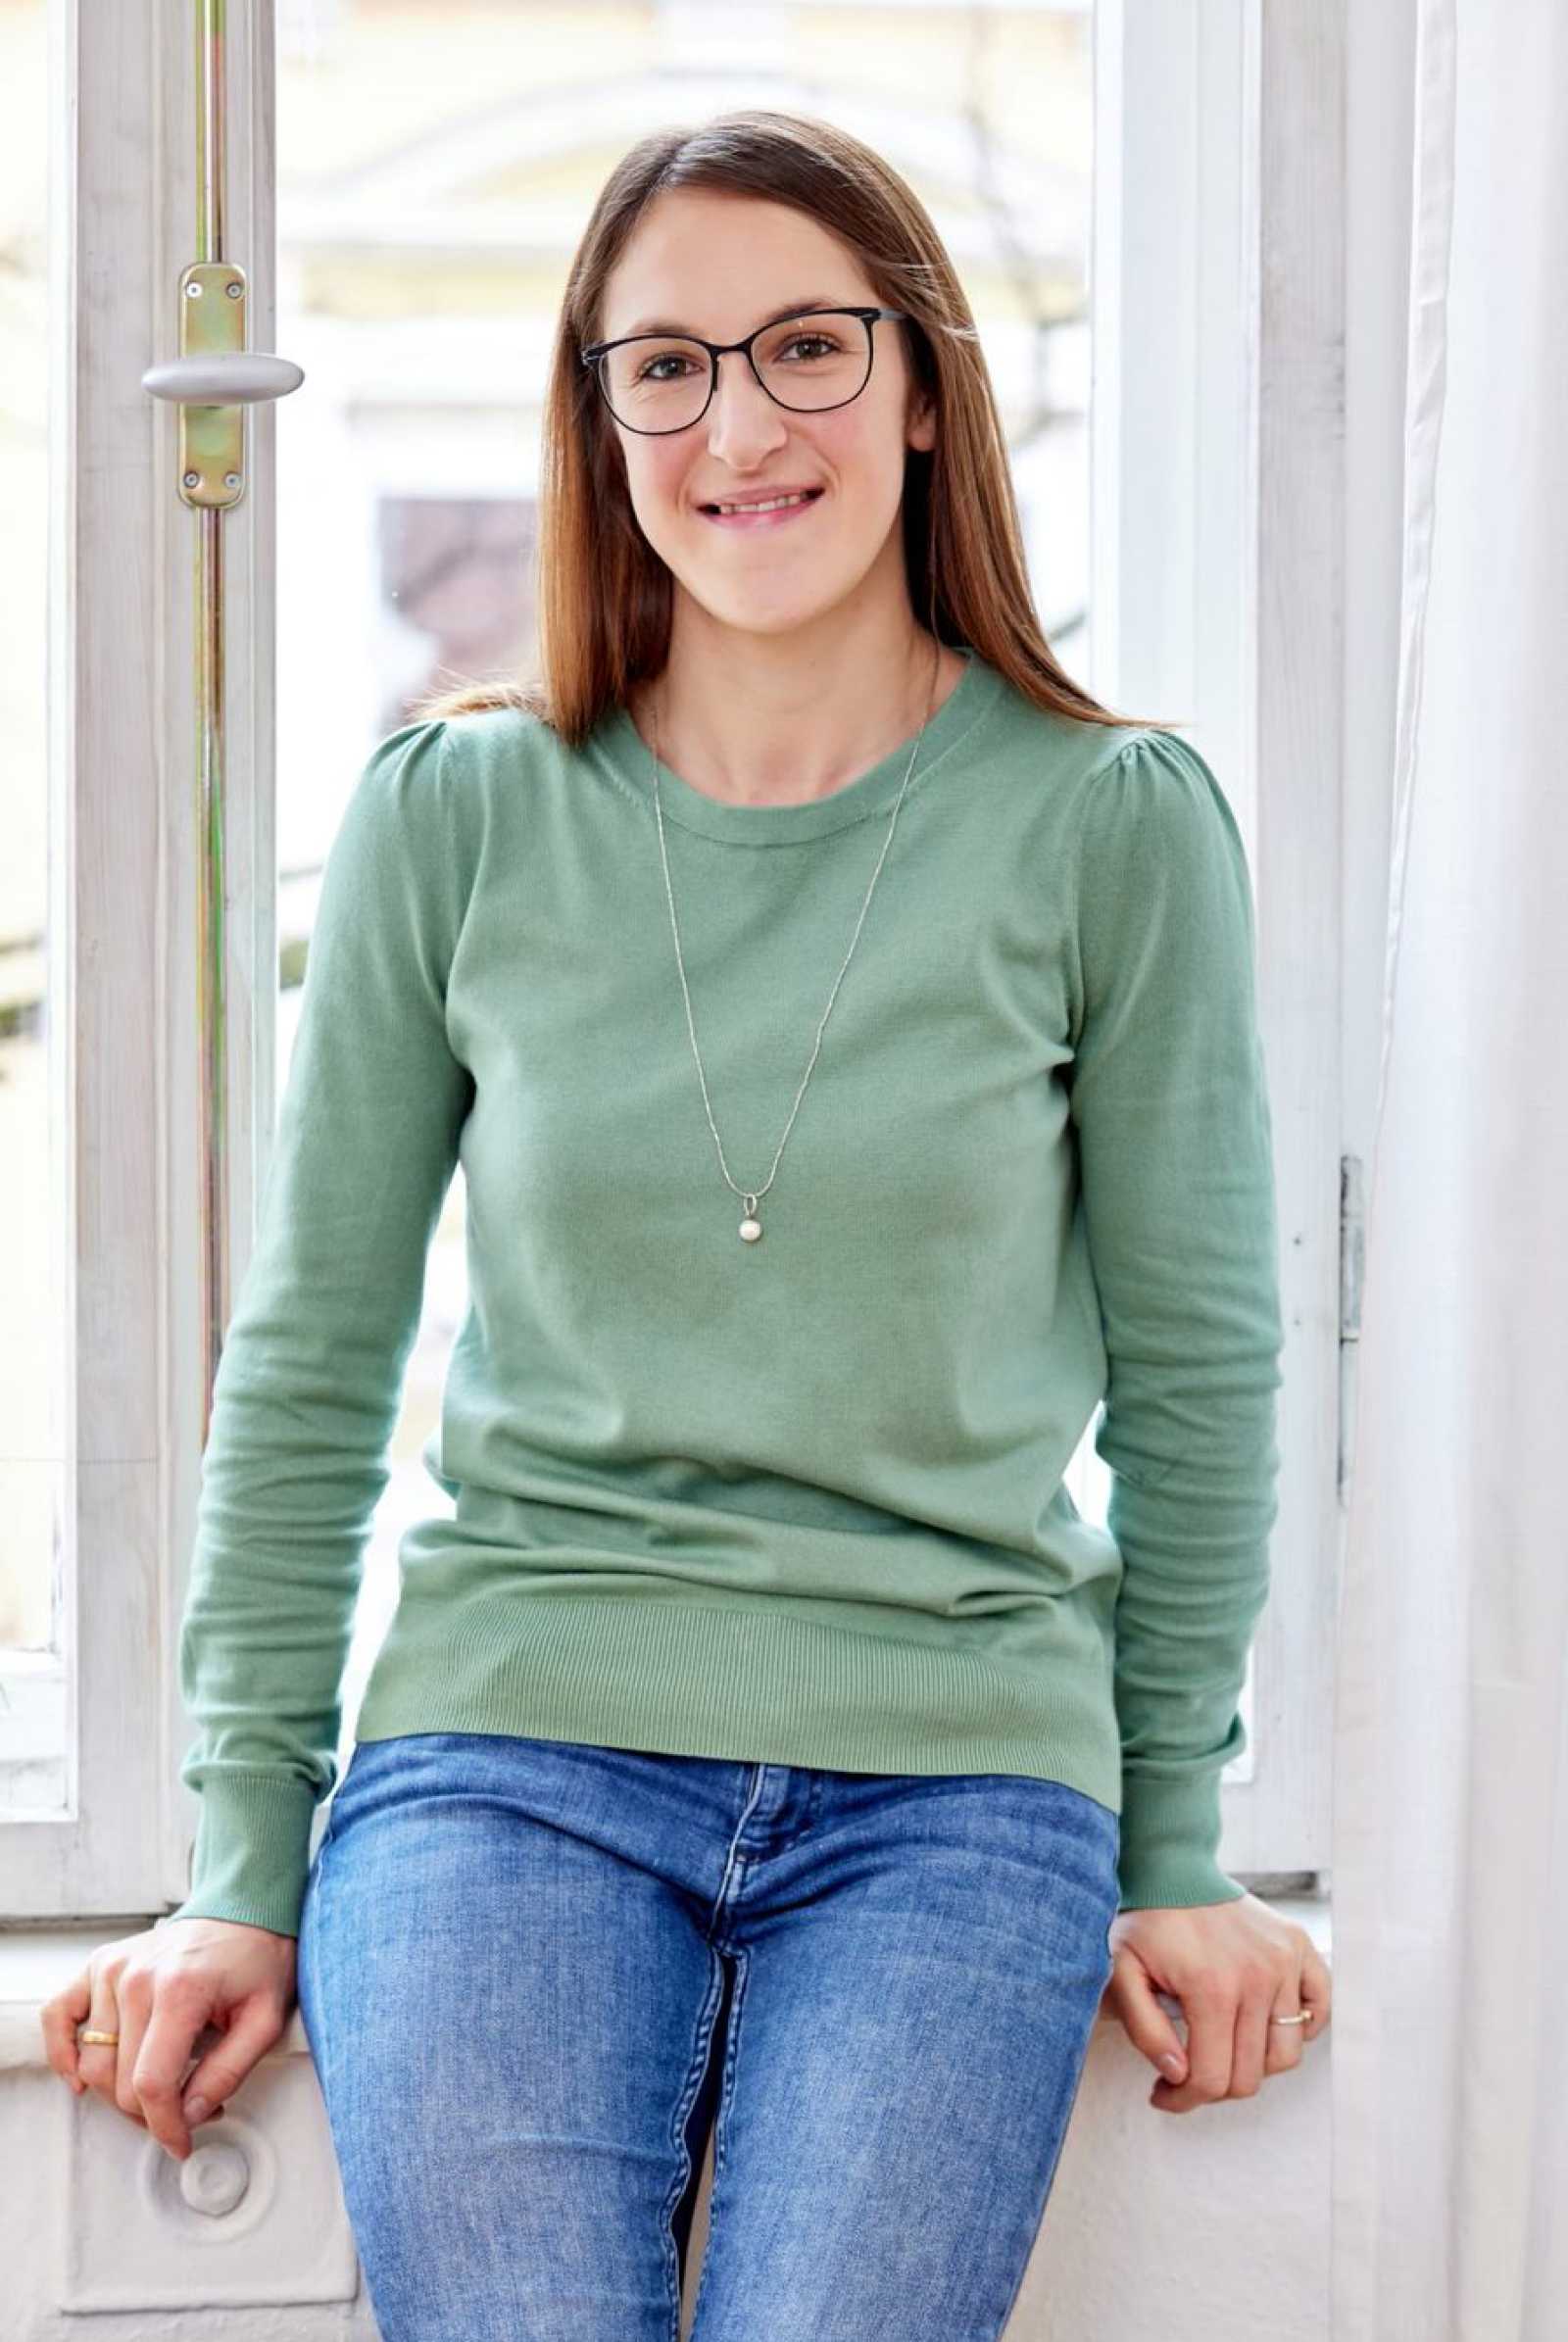 Psychotherapeutin Katharina Stephan auf dem weißen Fensterbrett sitzend lächelt freundlich in die Kamera